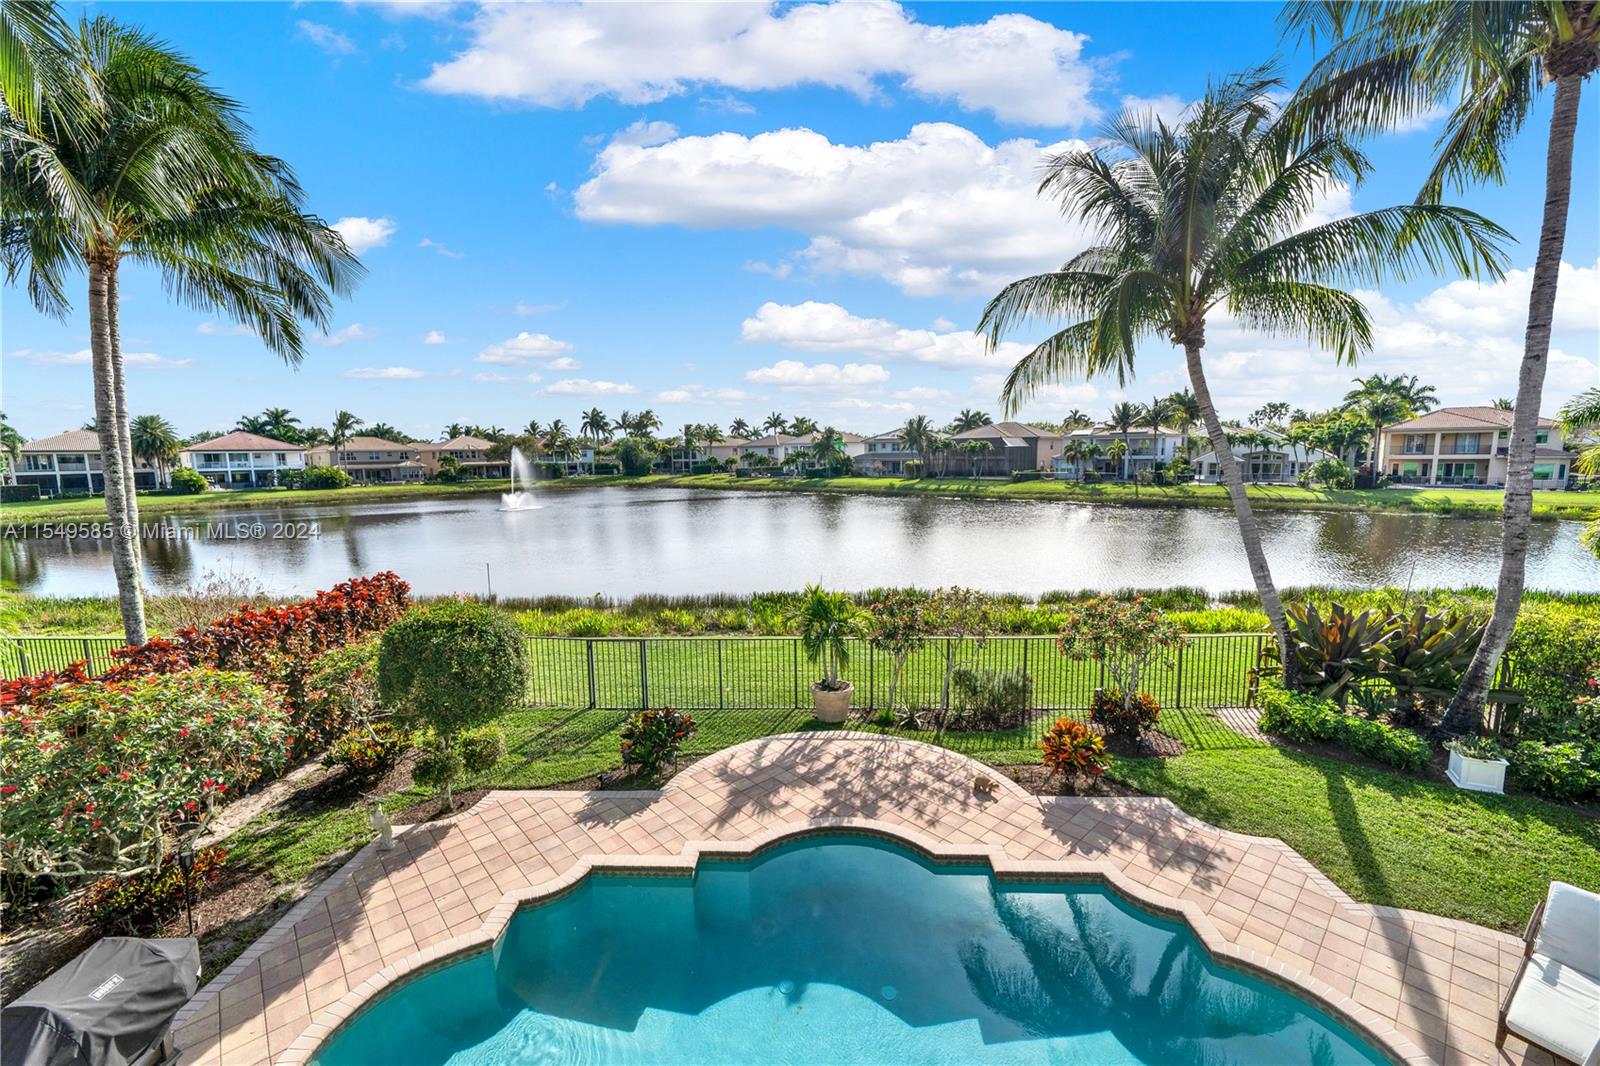 Property for Sale at 11052 Sunset Ridge Cir Cir, Boynton Beach, Palm Beach County, Florida - Bedrooms: 4 
Bathrooms: 4  - $1,099,999